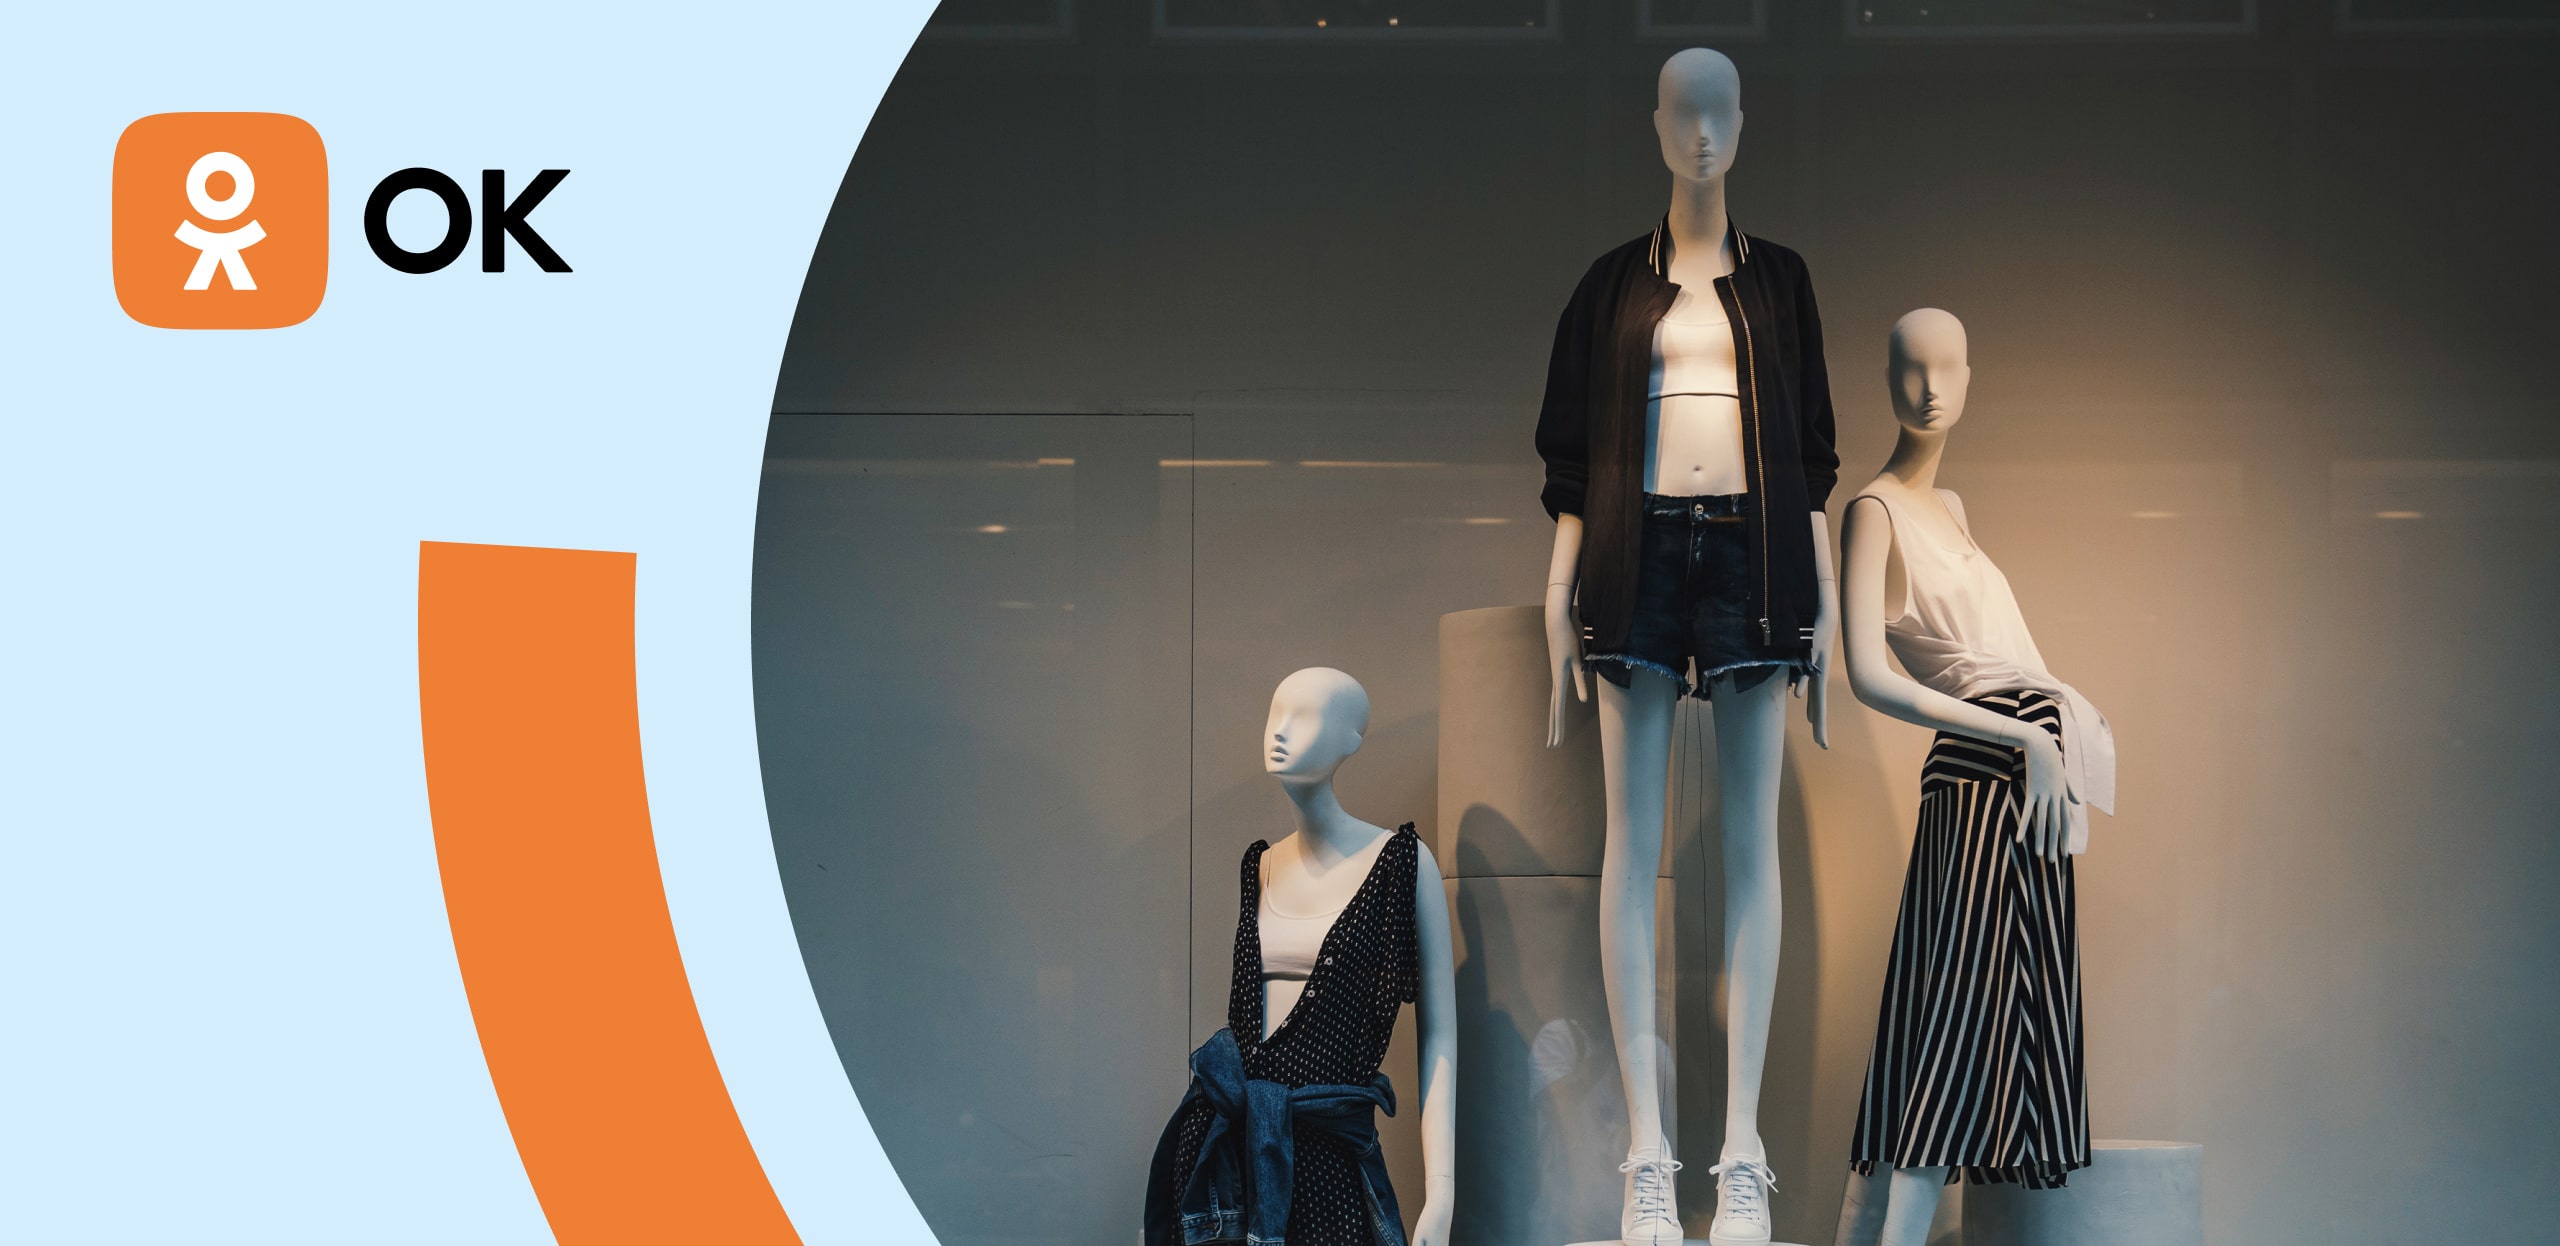 КЕЙС: Как с помощью рекламы в ОК в 3-4 раза увеличить посещаемость выставок одежды